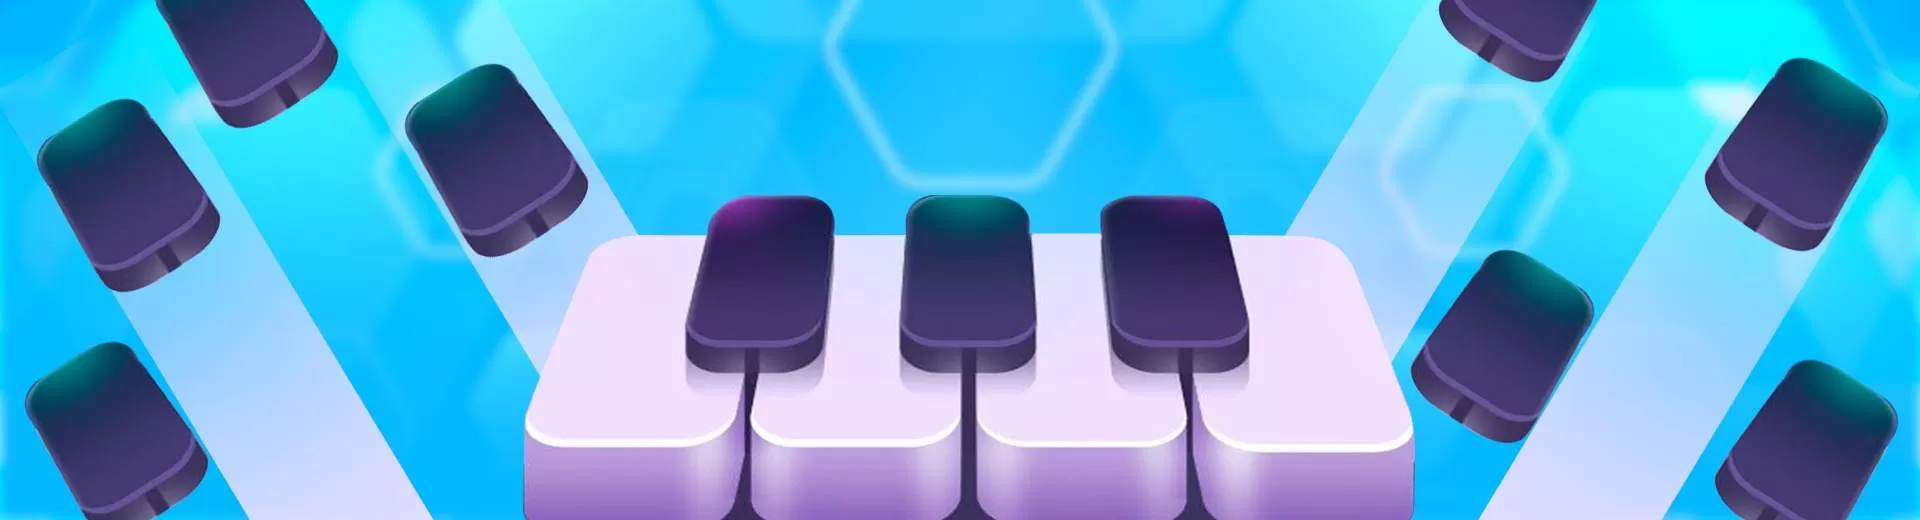 Piano Dream Magic Tiles Emulator Pc